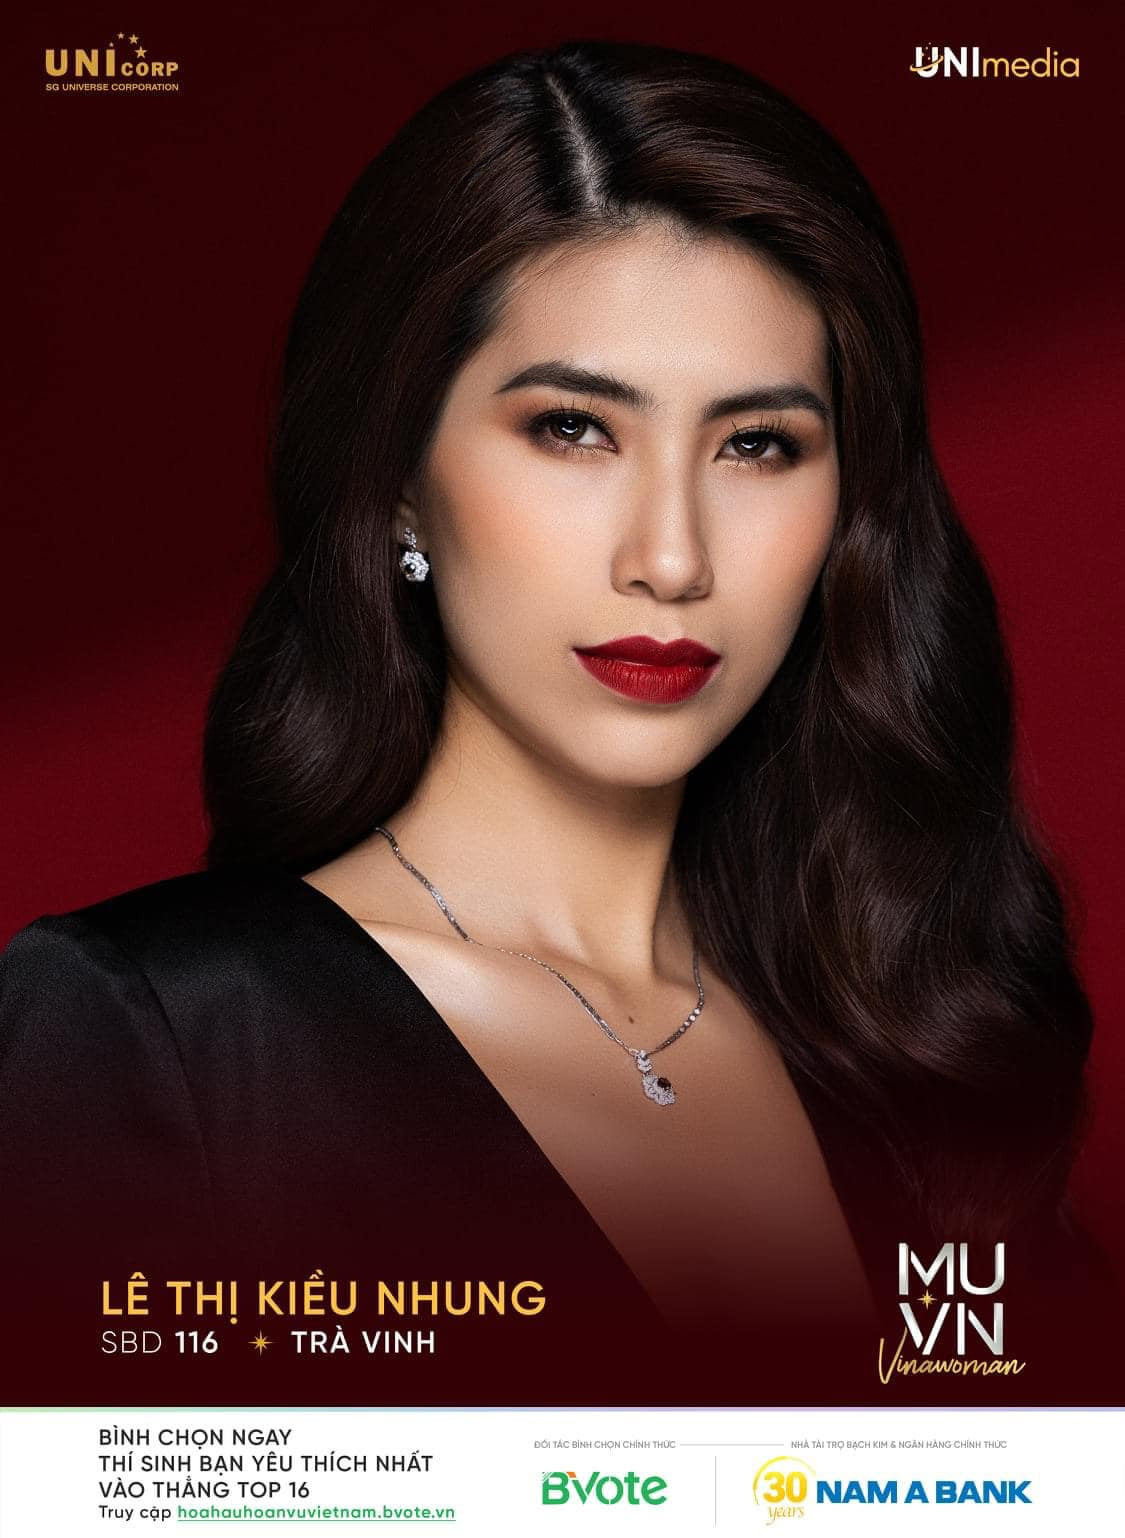 Nguyễn Thị Ngọc Châu - SBD 314 vence miss universe vietnam 2022. - Página 2 VWJ9bj